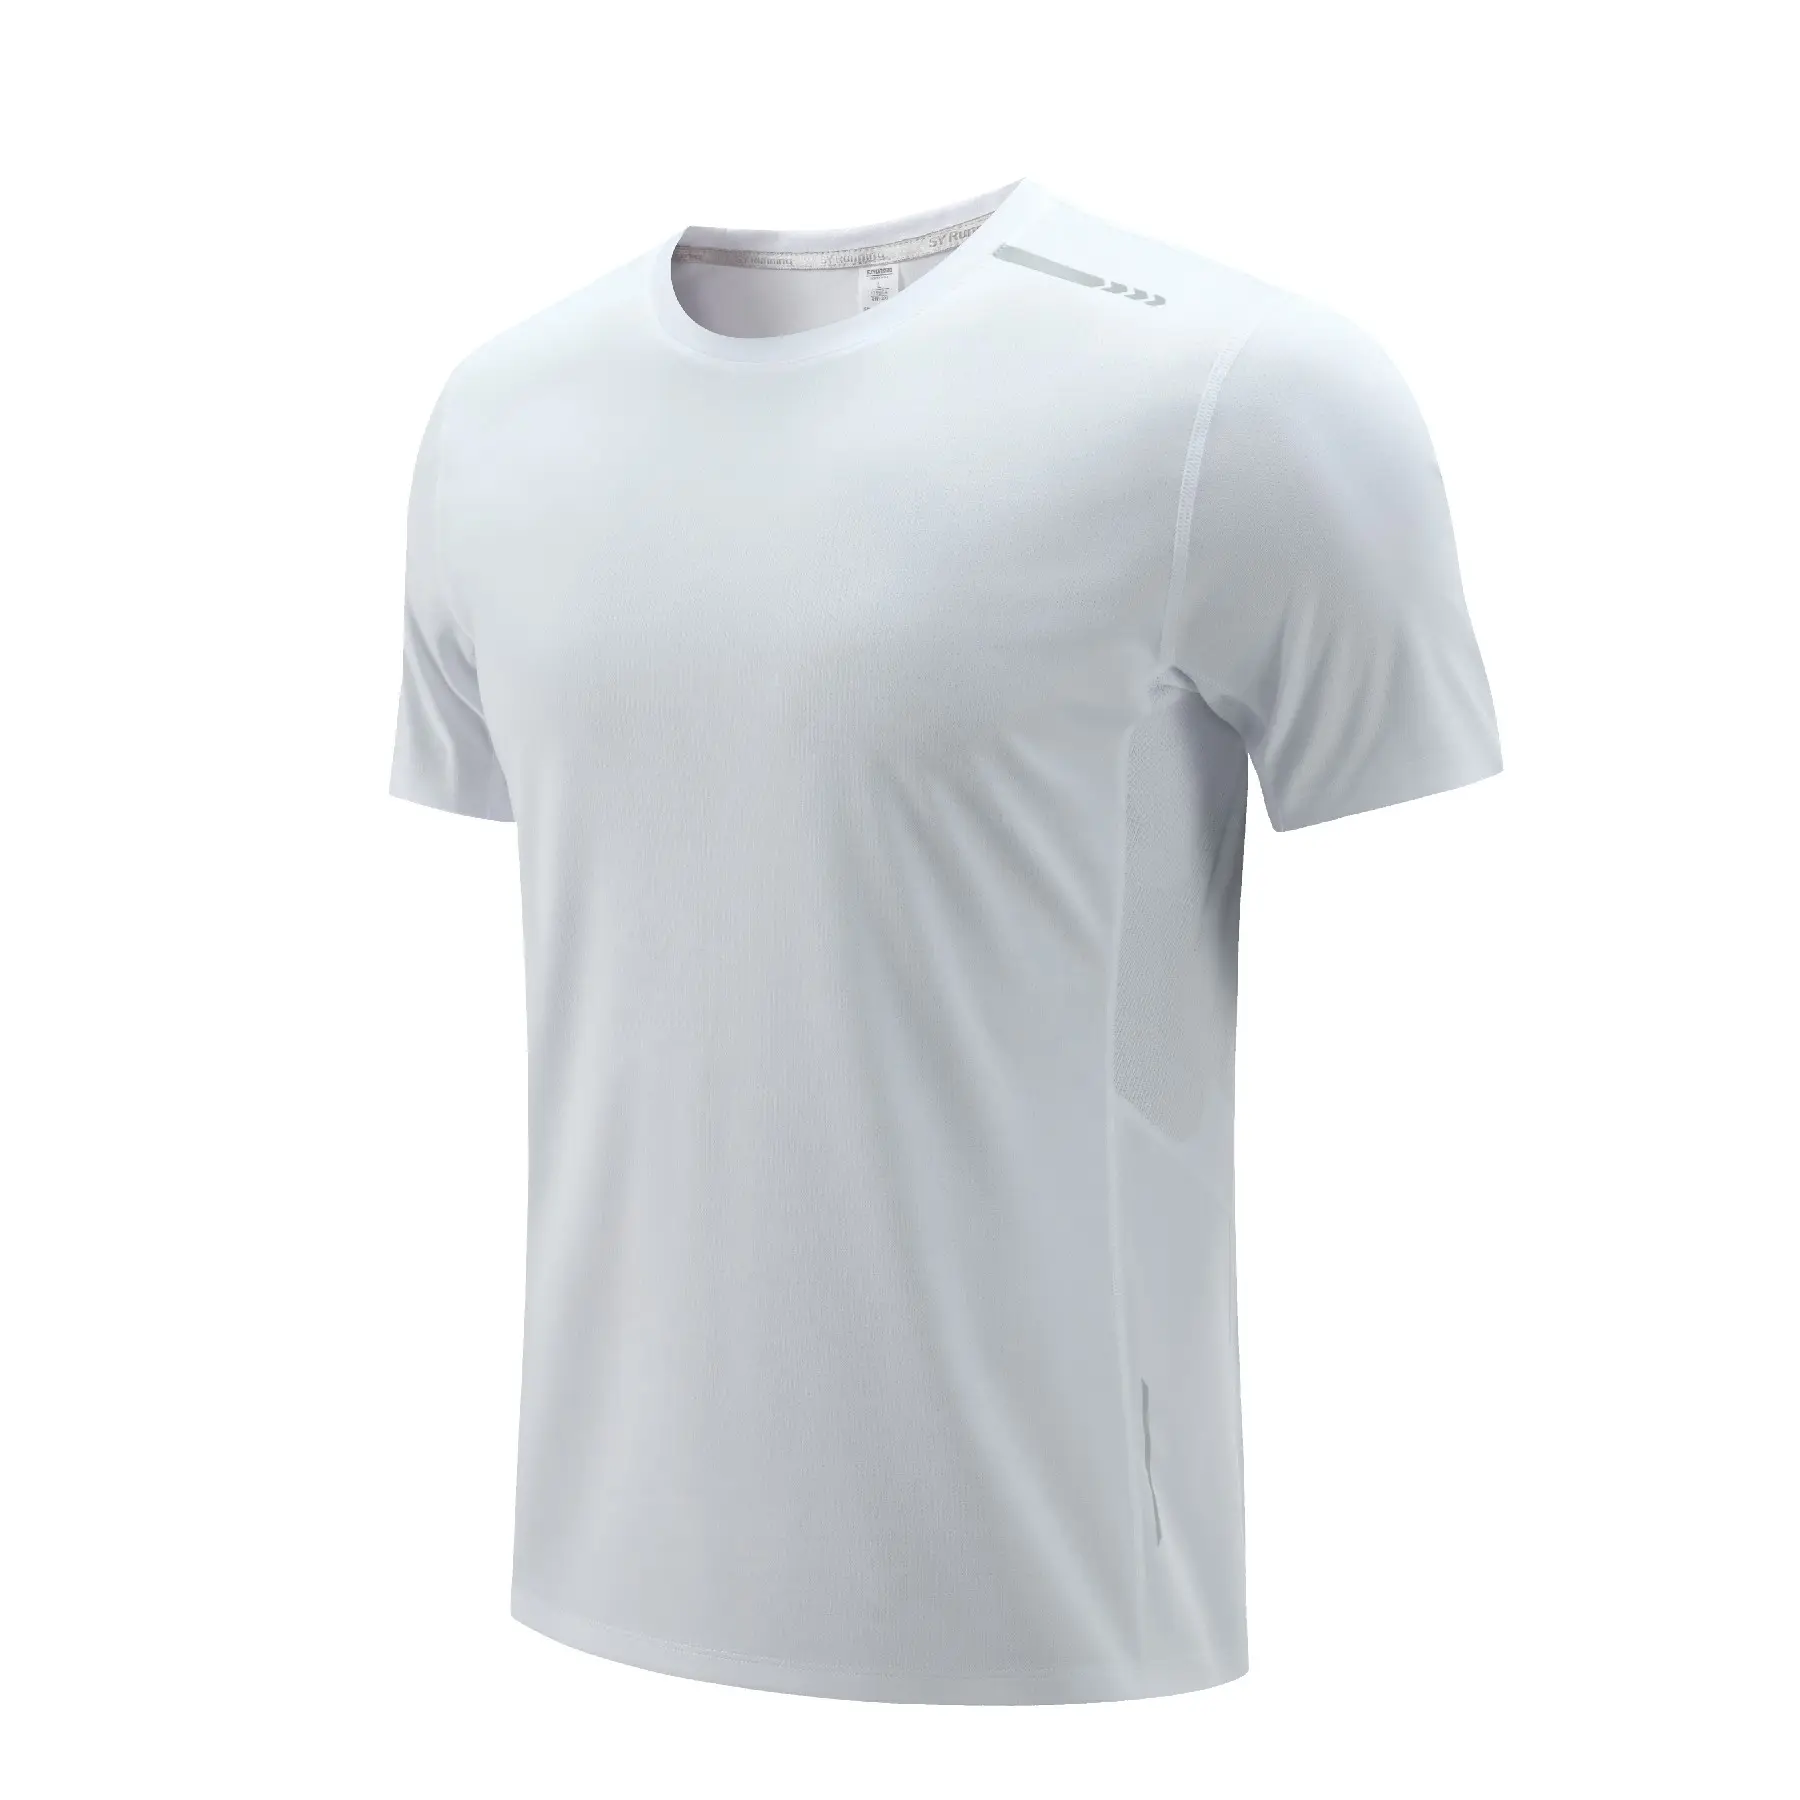 180 Gramm Kurzarm hochwertig einfarbig individuell modisch und bequem Herren-T-Shirt mit 100 % Polyesterfaser lässig